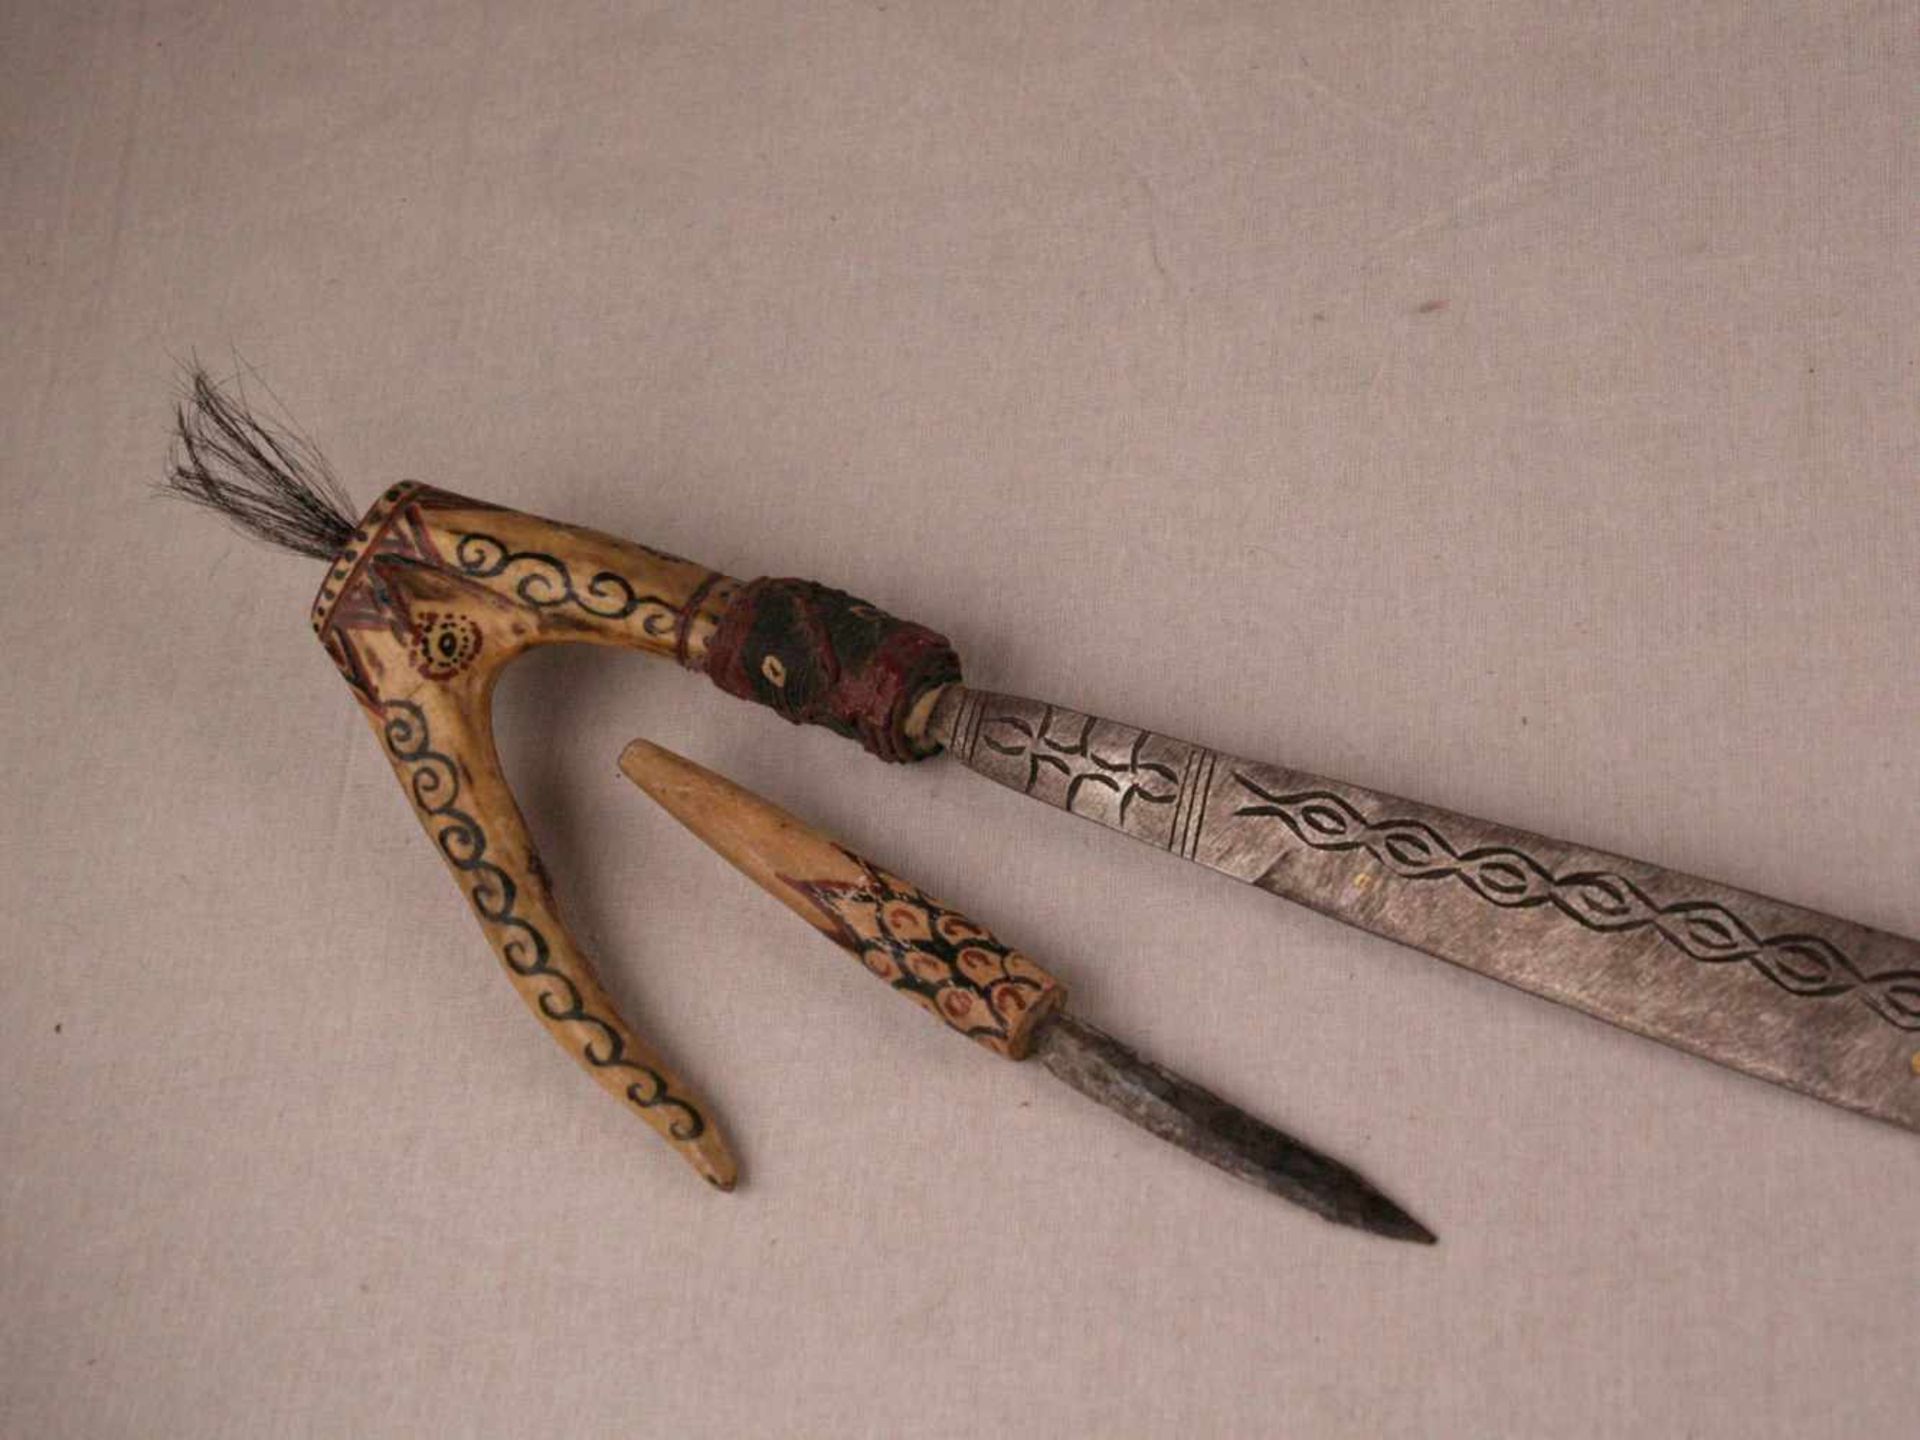 Mandau-Schwert - Borneo, Kopfjägerschwert des Dayak Stammes (auch Parang Ihlang genannt), verzierter - Bild 5 aus 7